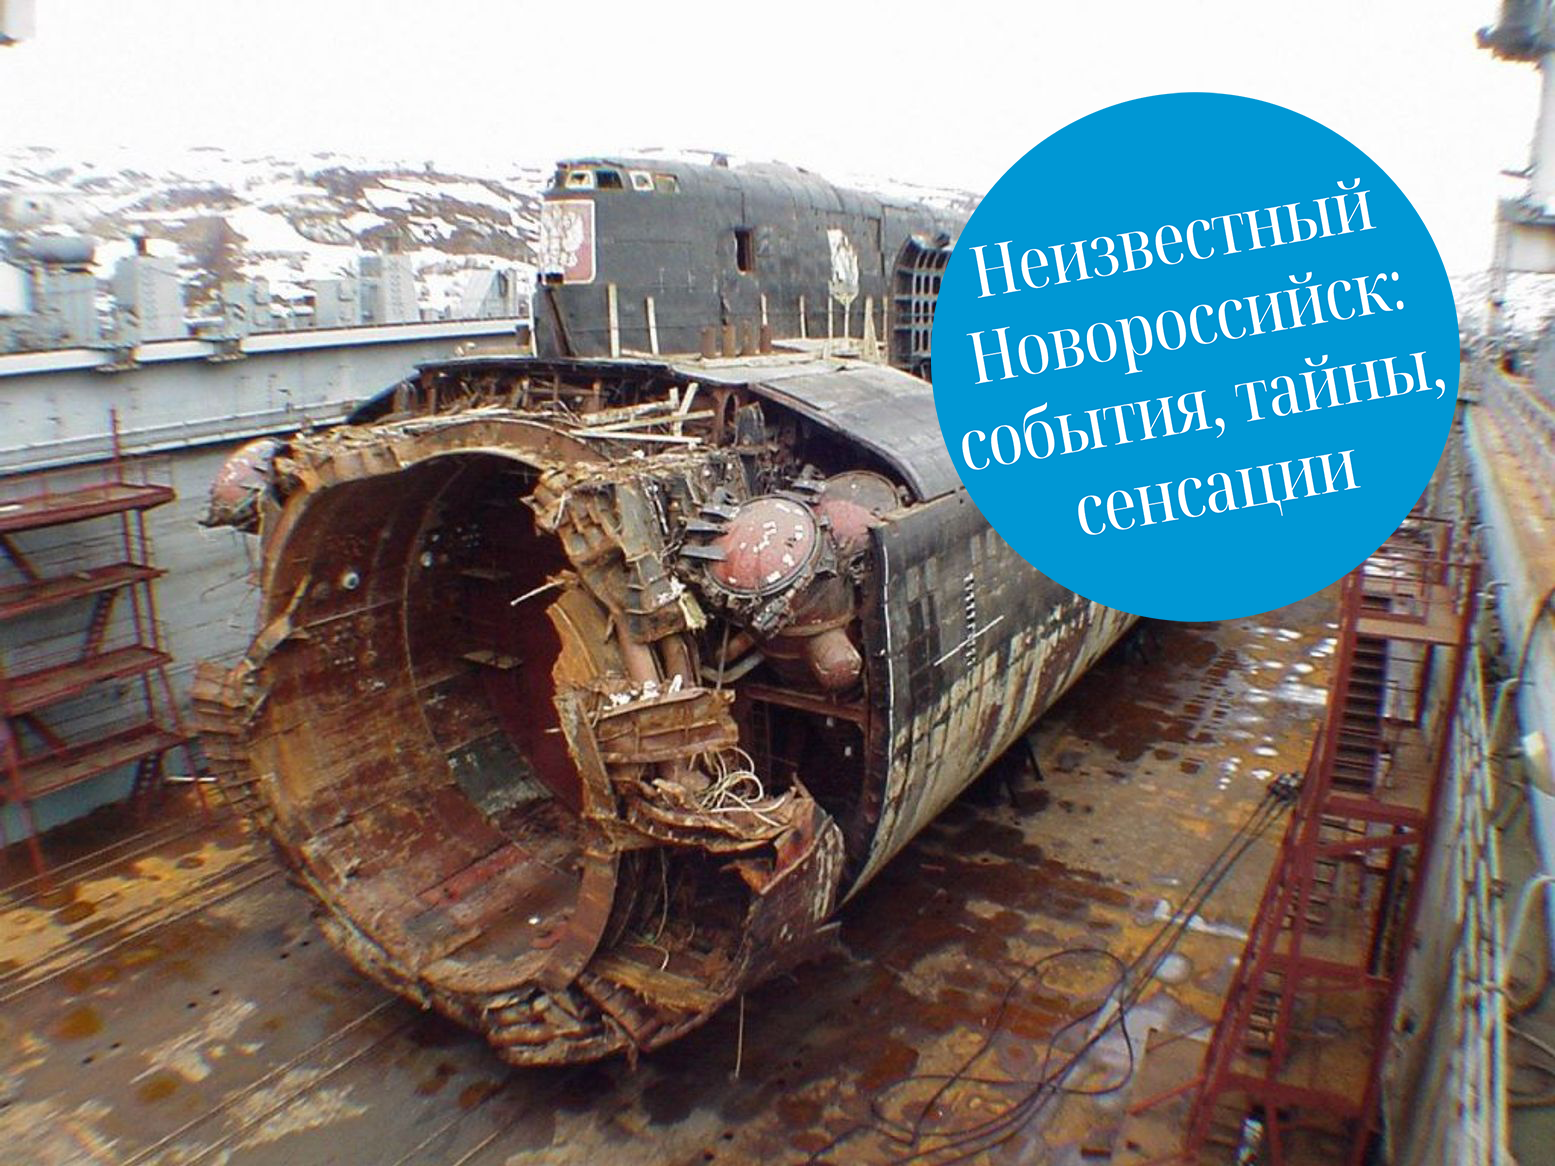 Названа причина гибели подлодки «Курск». Какие выводы сделали наши земляки, обследовав субмарину сразу после трагедии?